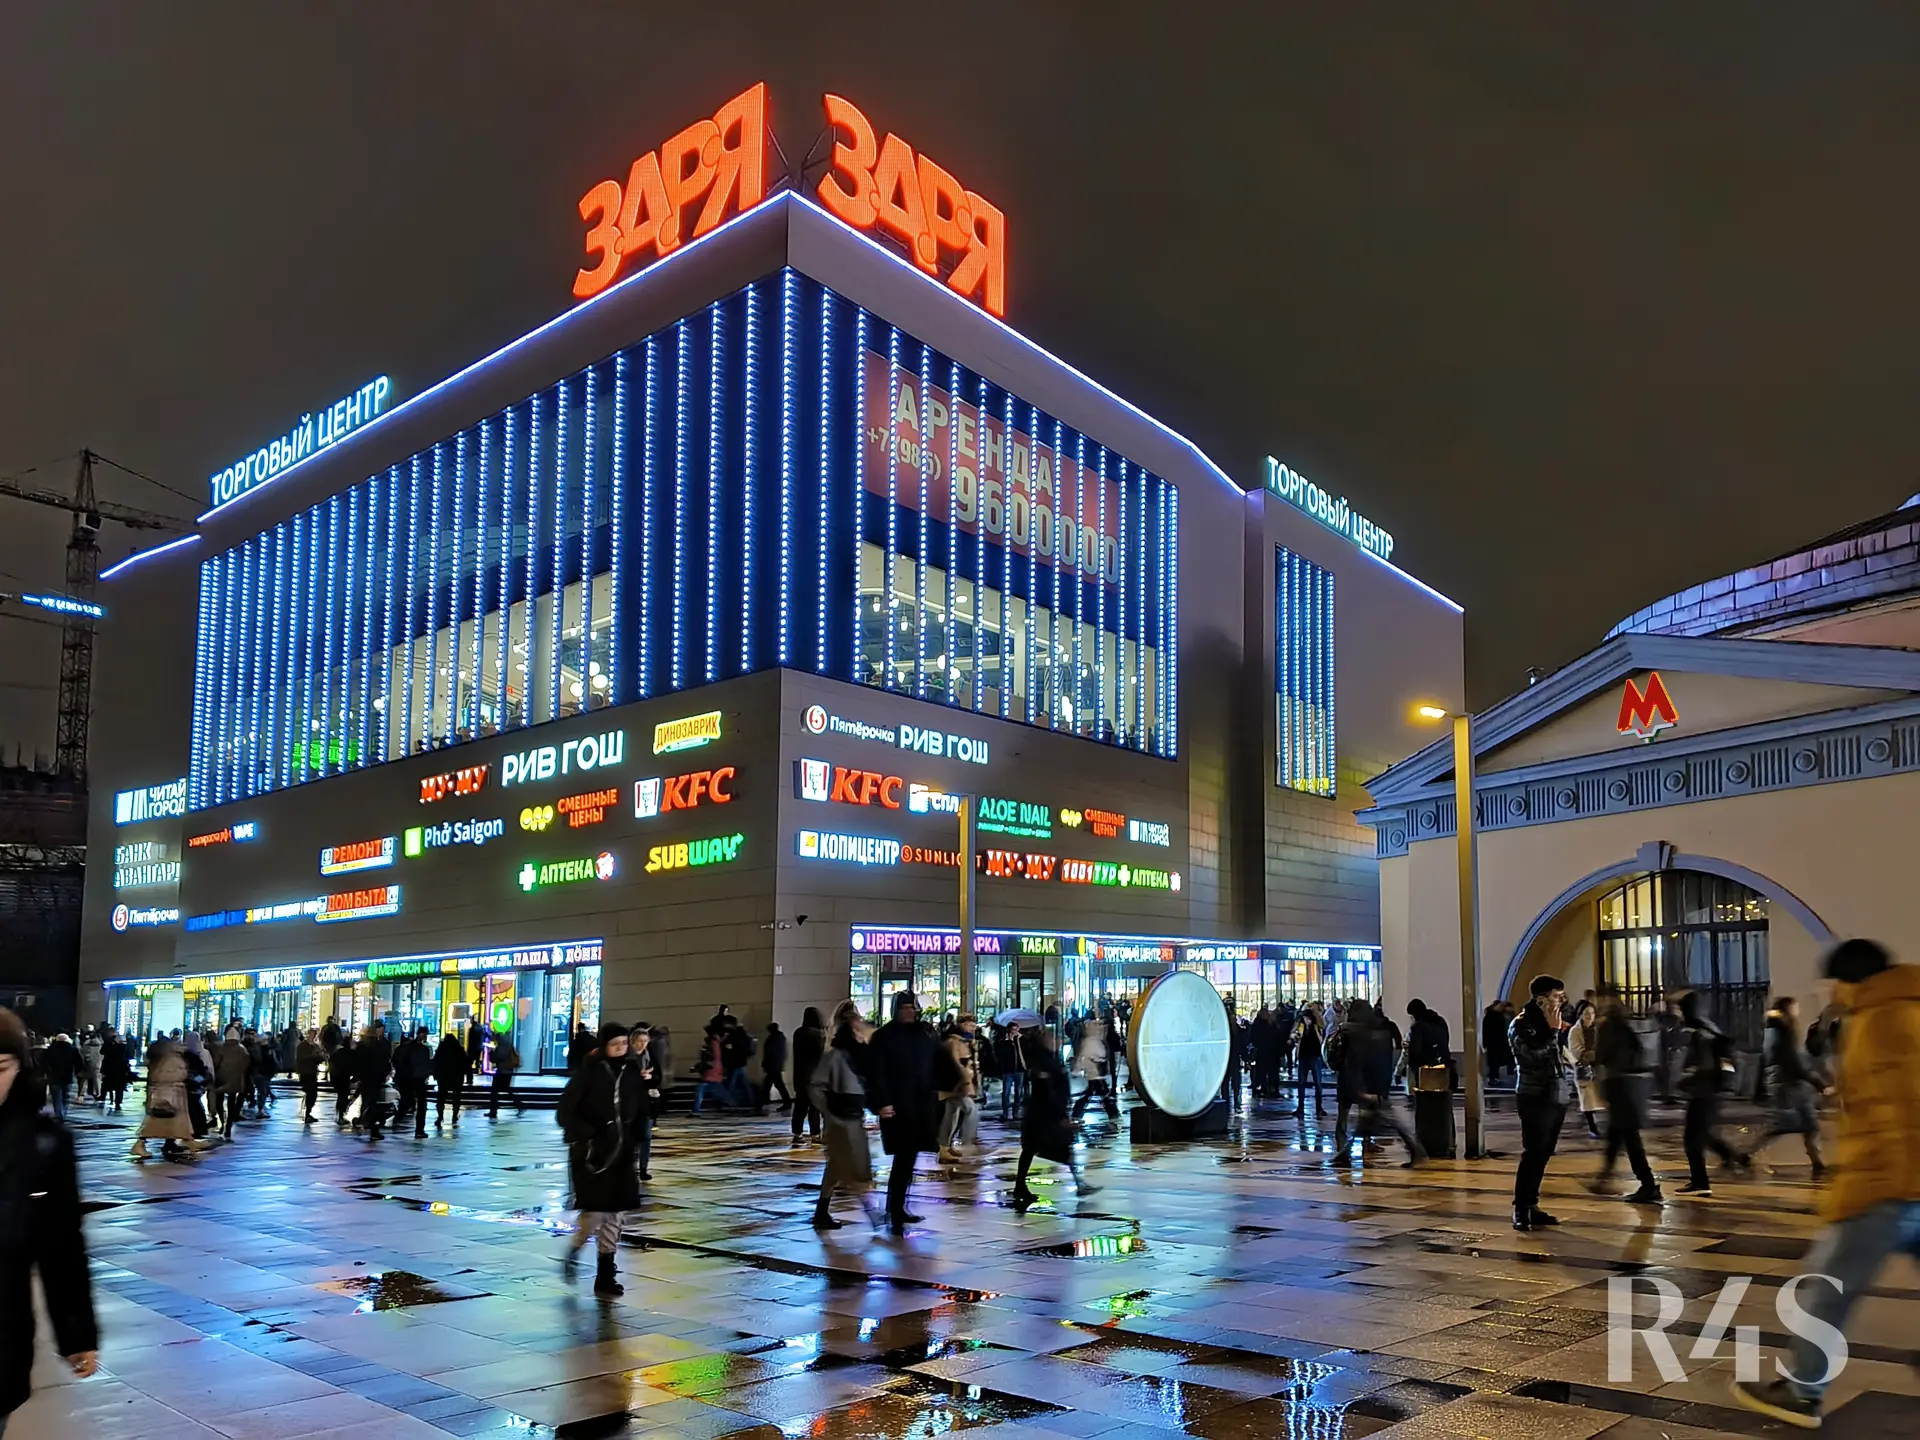 Аренда торговых помещений площадью 40.5 - 213.9 м2 в Москве:  Большая Семеновская, 20 ТЦ«ЗАРЯ» R4S | Realty4Sale